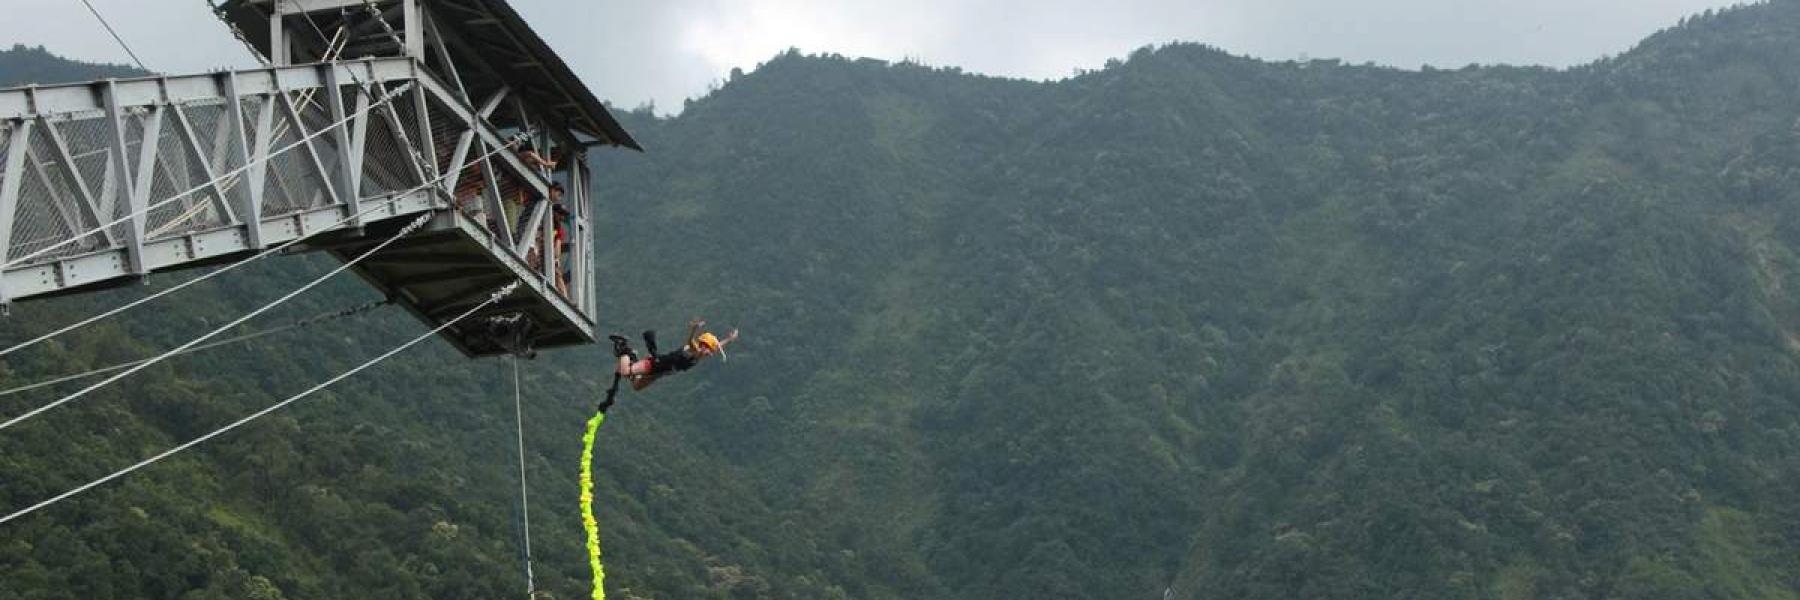 كولومبية تقتل نفسها دون قصد عن ارتفاع 45 مترا 